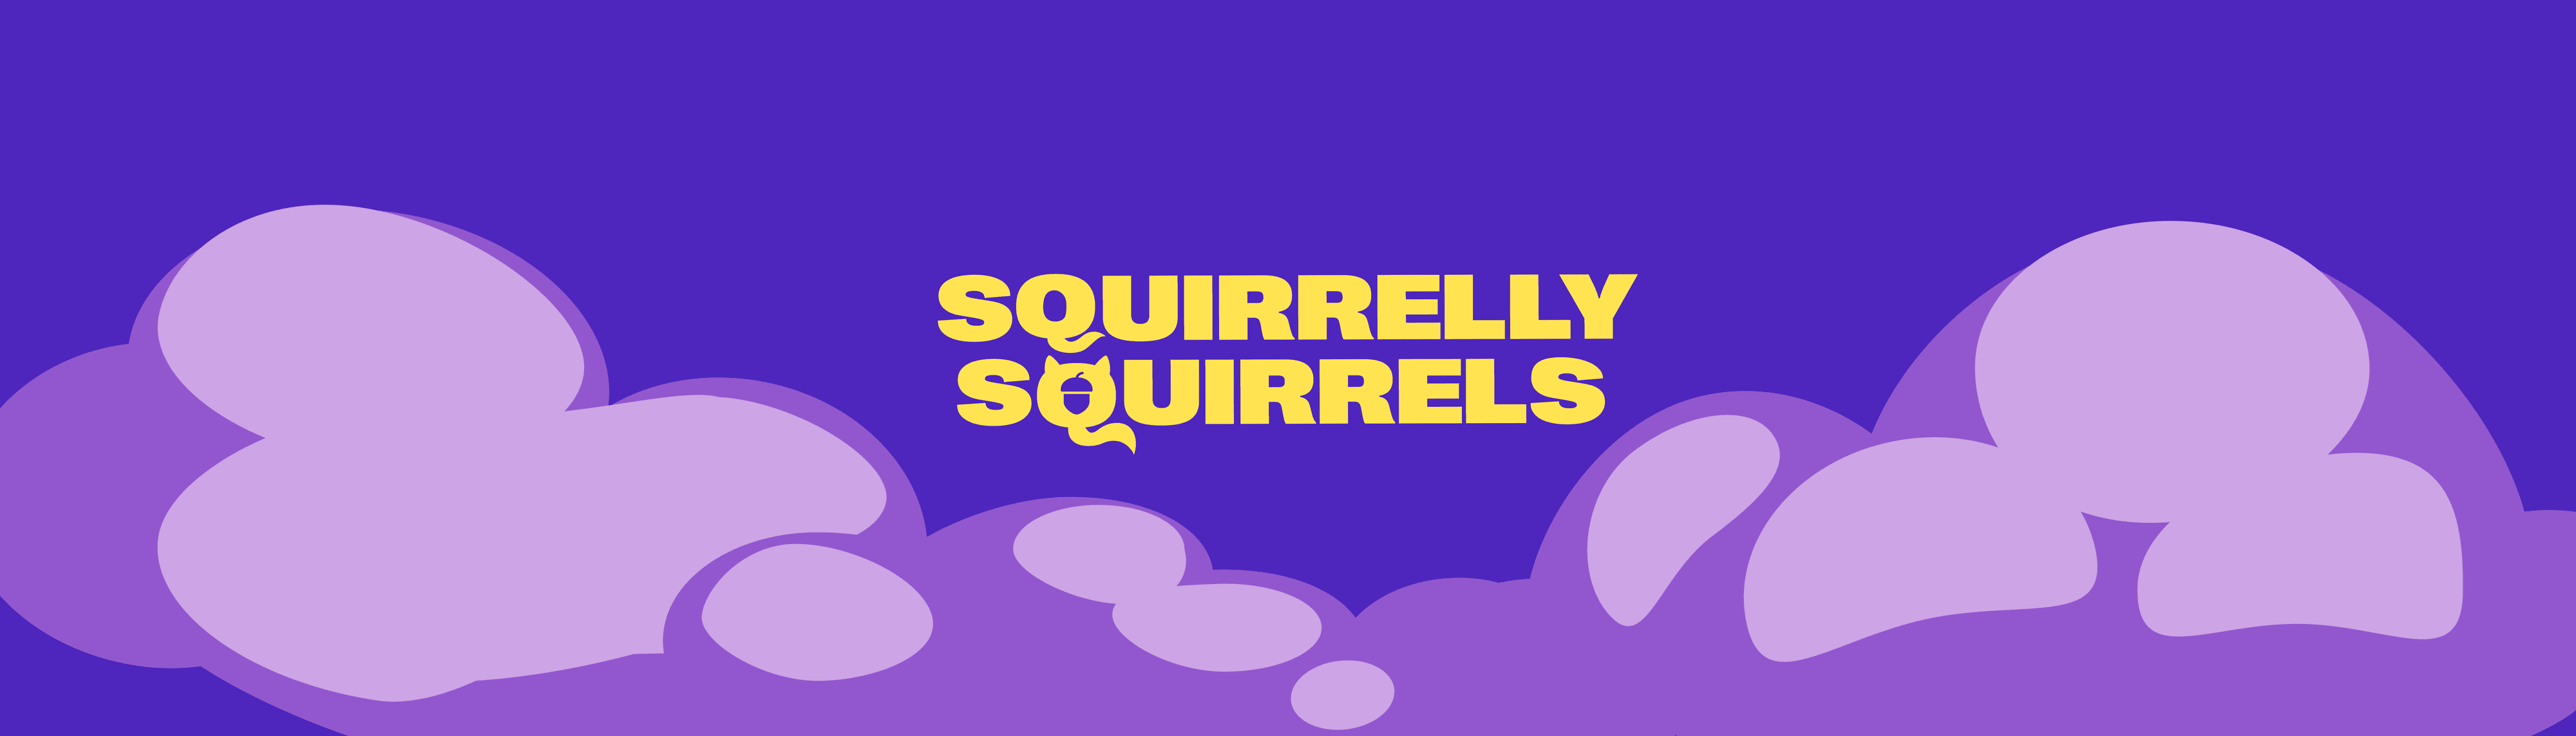 SquirrelDeployer 橫幅